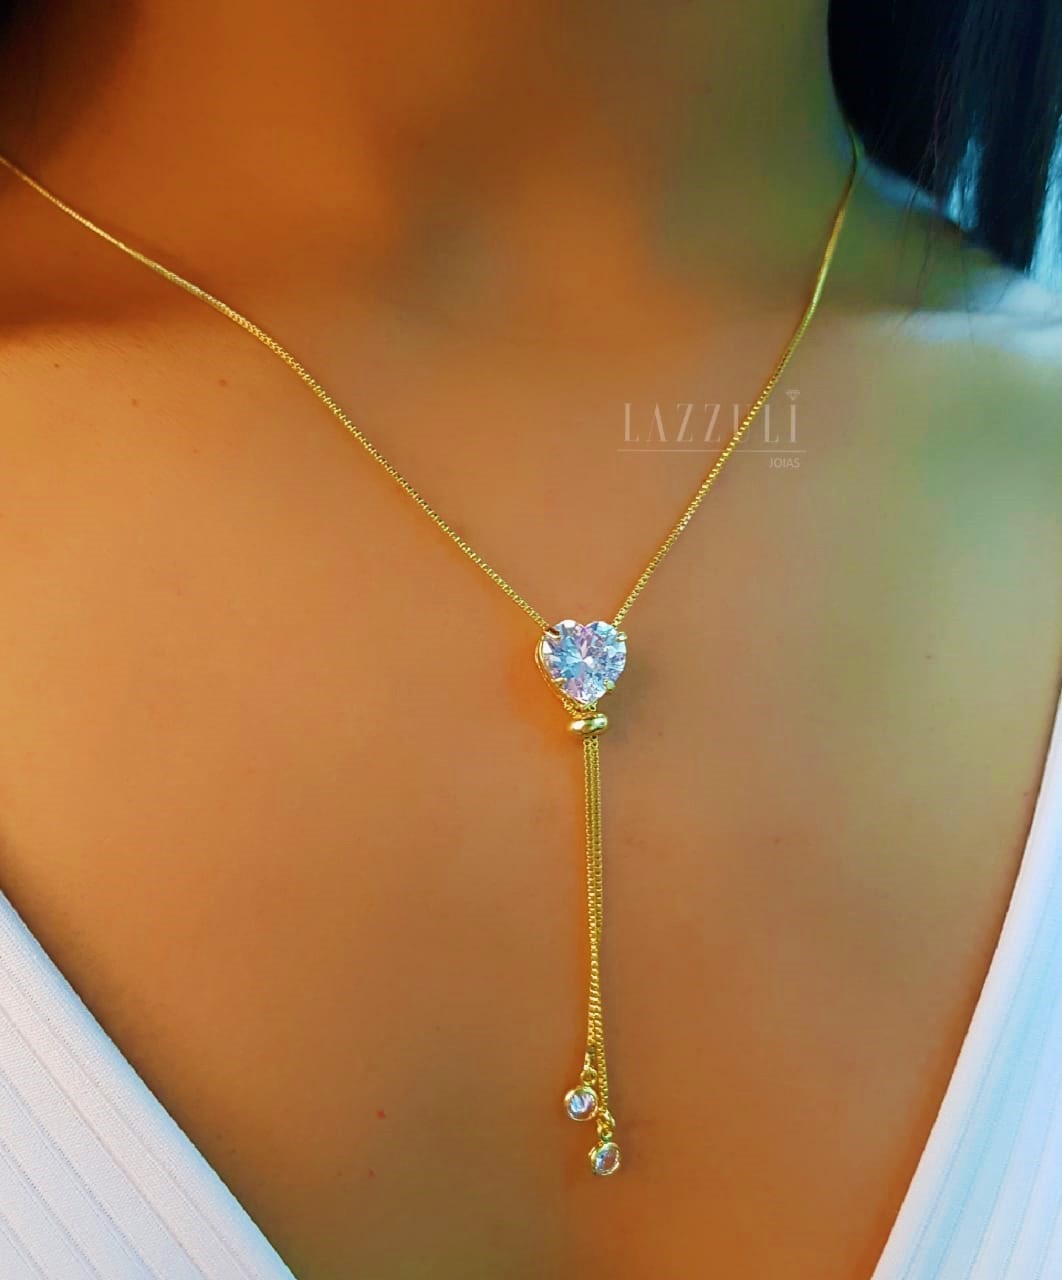 Colar Gravatinha Coração Zircônia Cristal Banhado em Ouro18k  - Lazzuli Joias